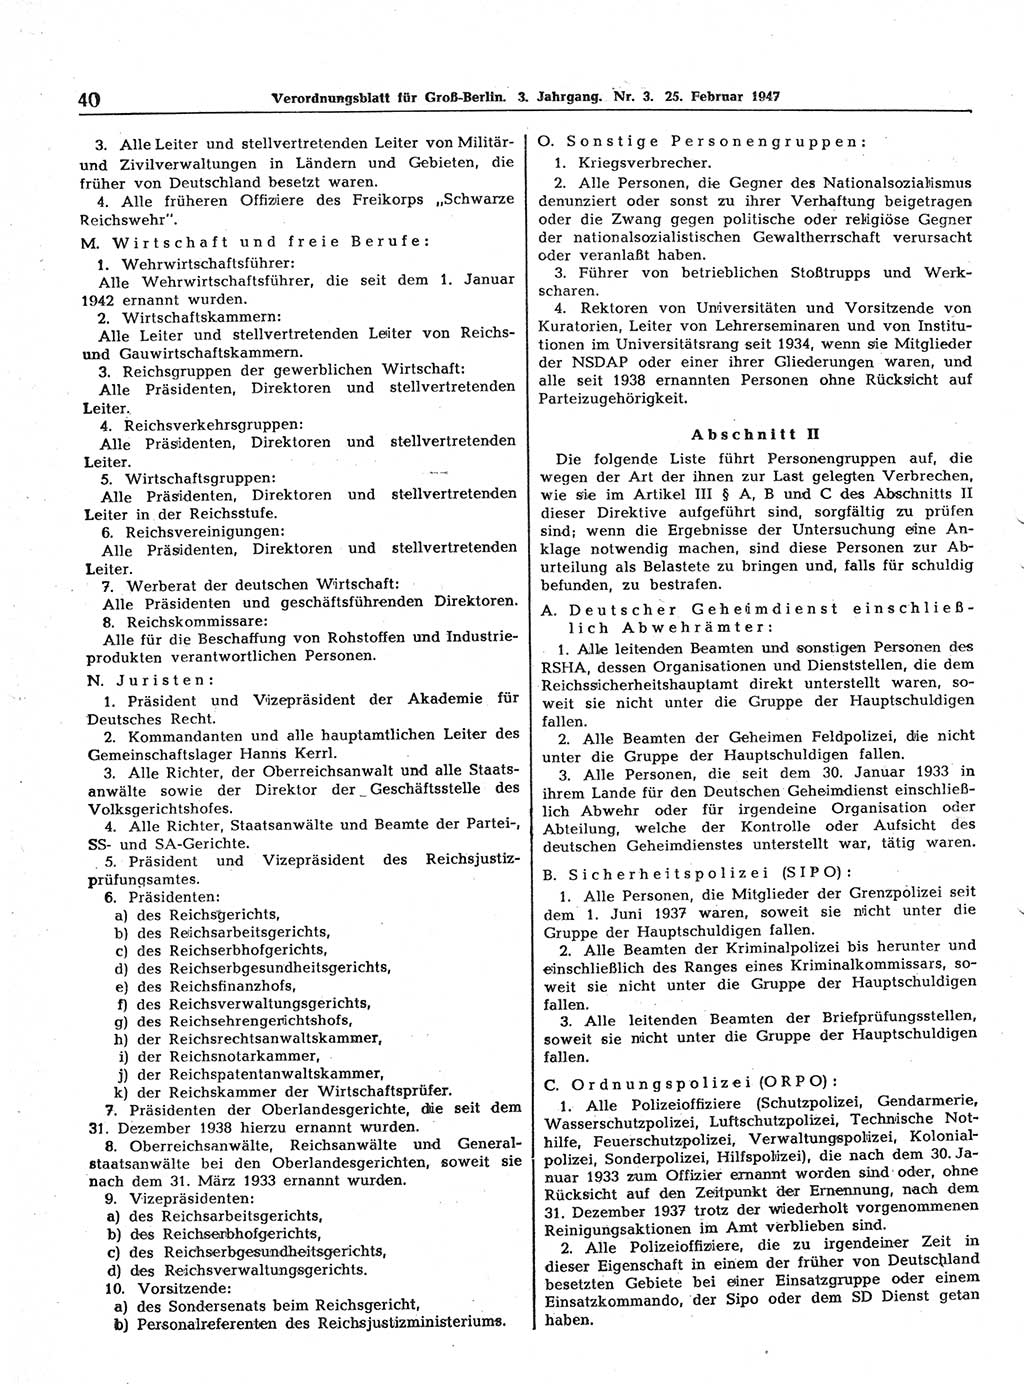 Verordnungsblatt (VOBl.) für Groß-Berlin 1947, Seite 40 (VOBl. Bln. 1947, S. 40)